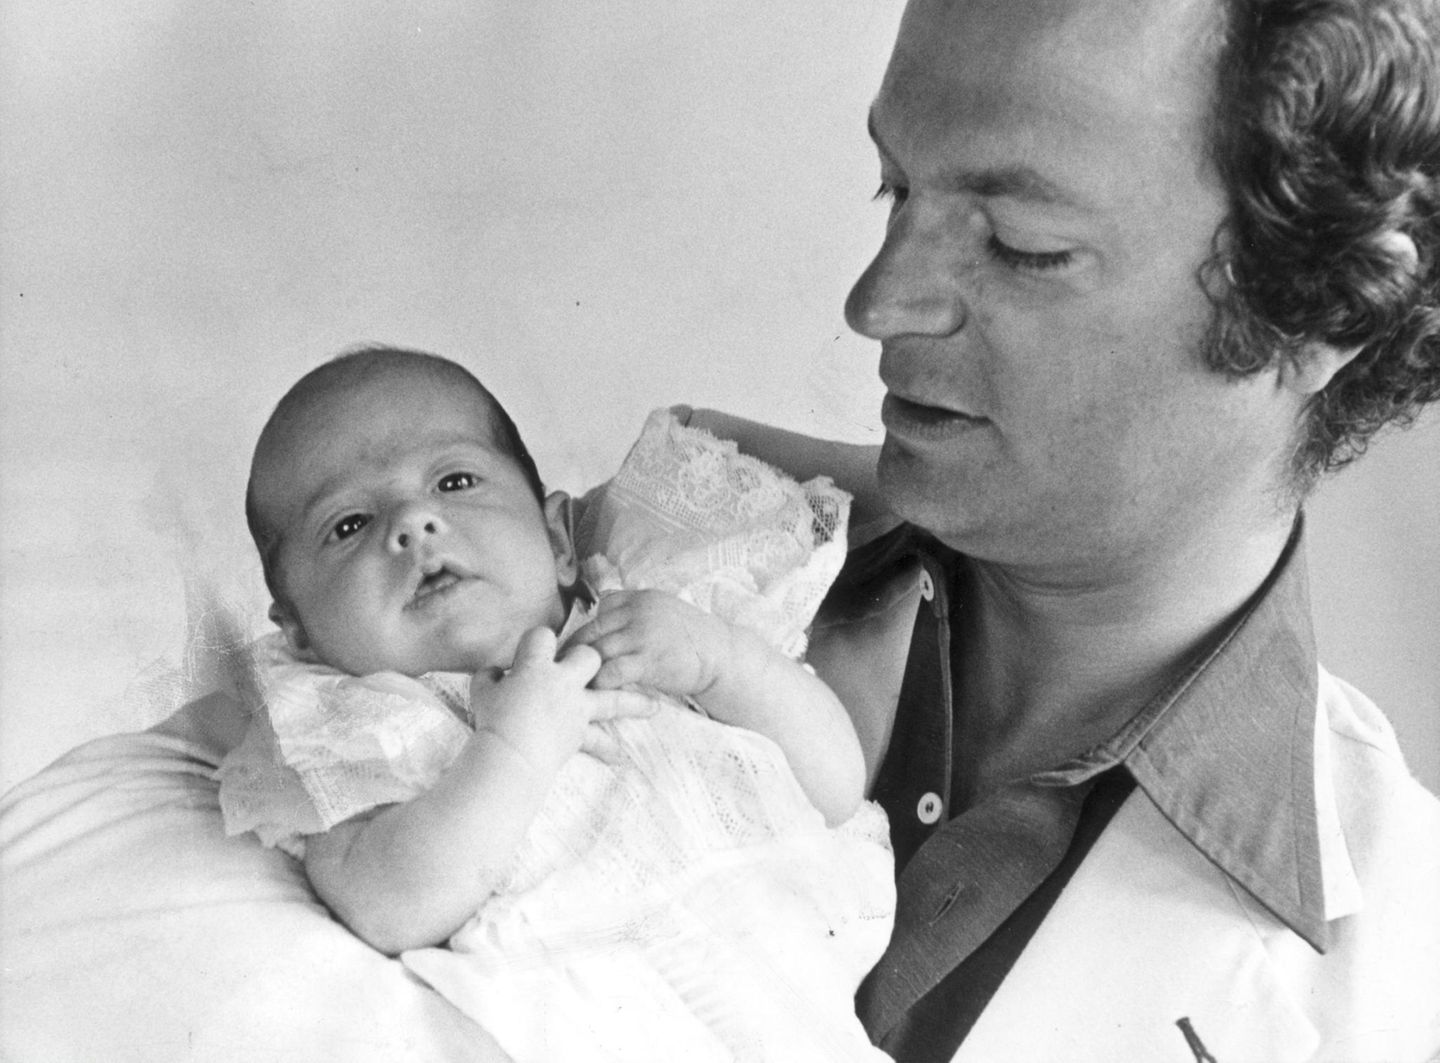 Prinz Carl Philip wird am 13. Mai 1979 geboren. Sein Geburtstermin wurde für Anfang Juni berechnet, sodass der kleine Prinz alle überraschte, als er sich schon Mitte Mai ankündigte.